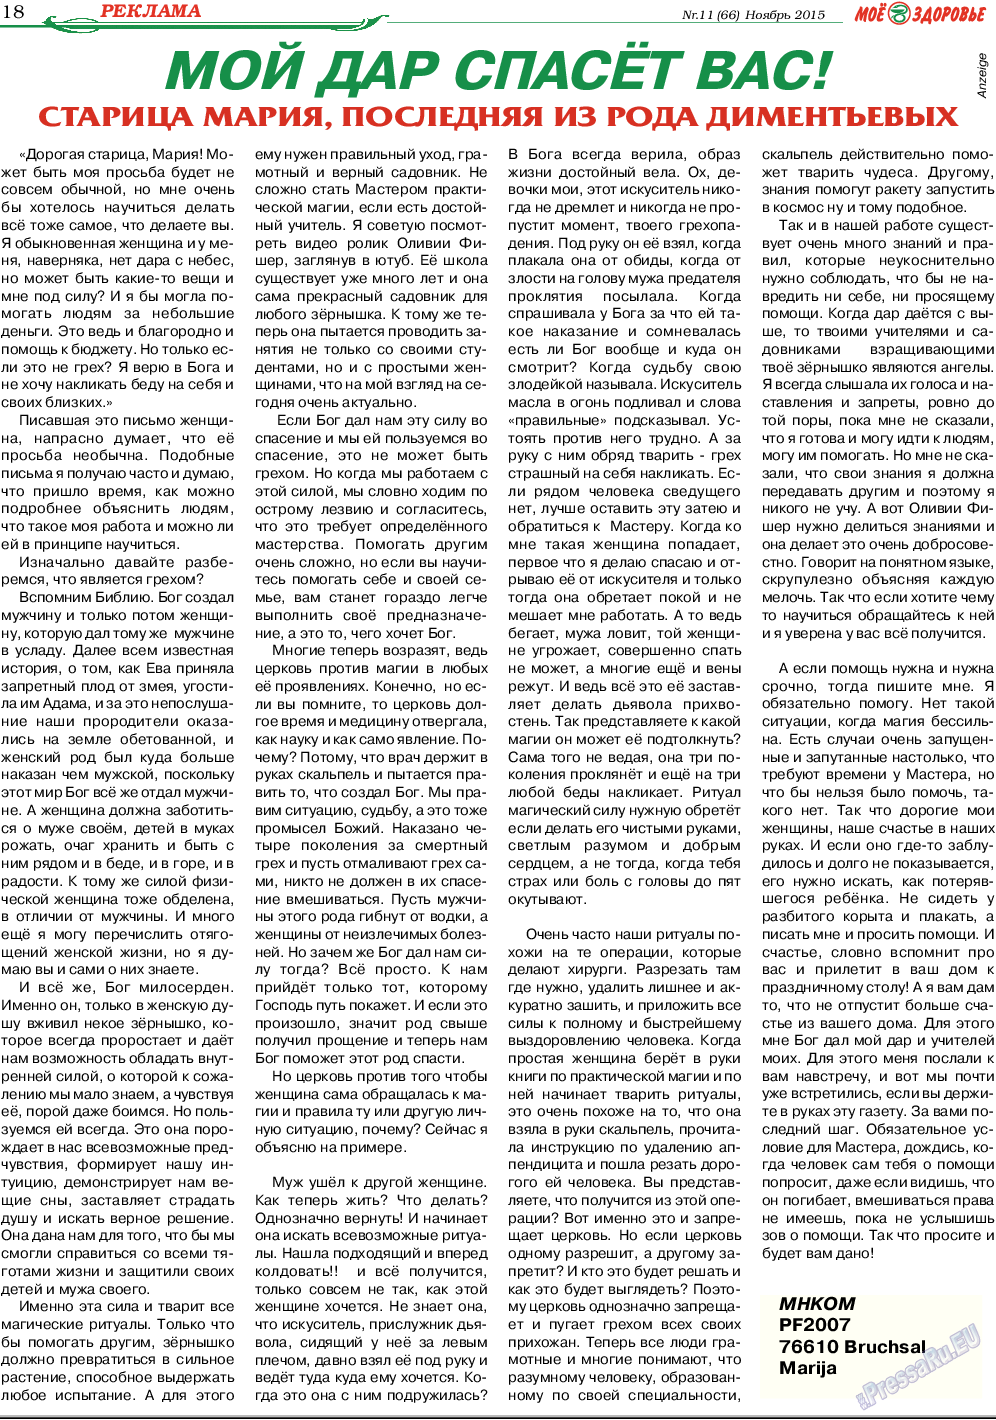 Кругозор, газета. 2015 №11 стр.18